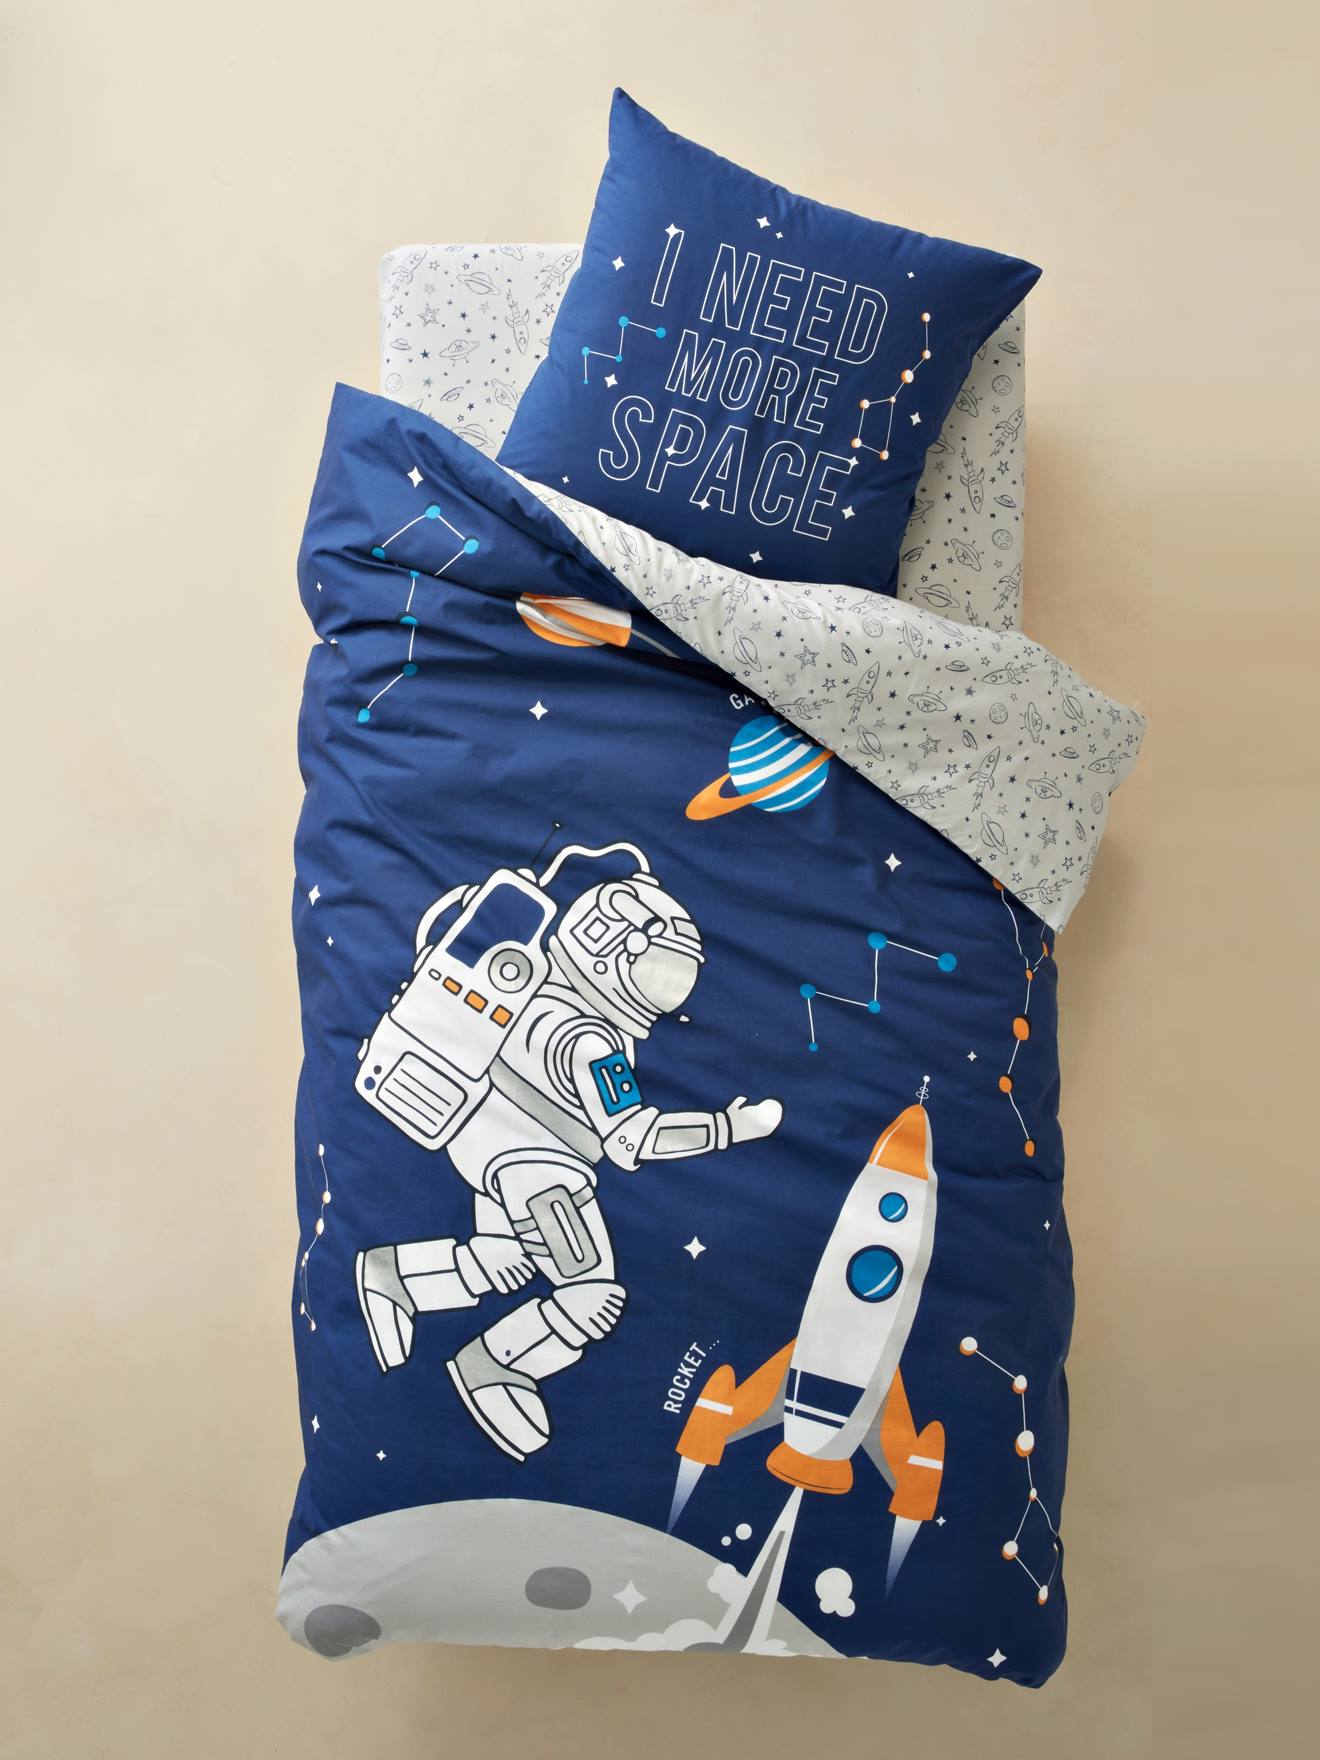 Duvet Cover Pillowcase Set For Children Planets Theme Blue